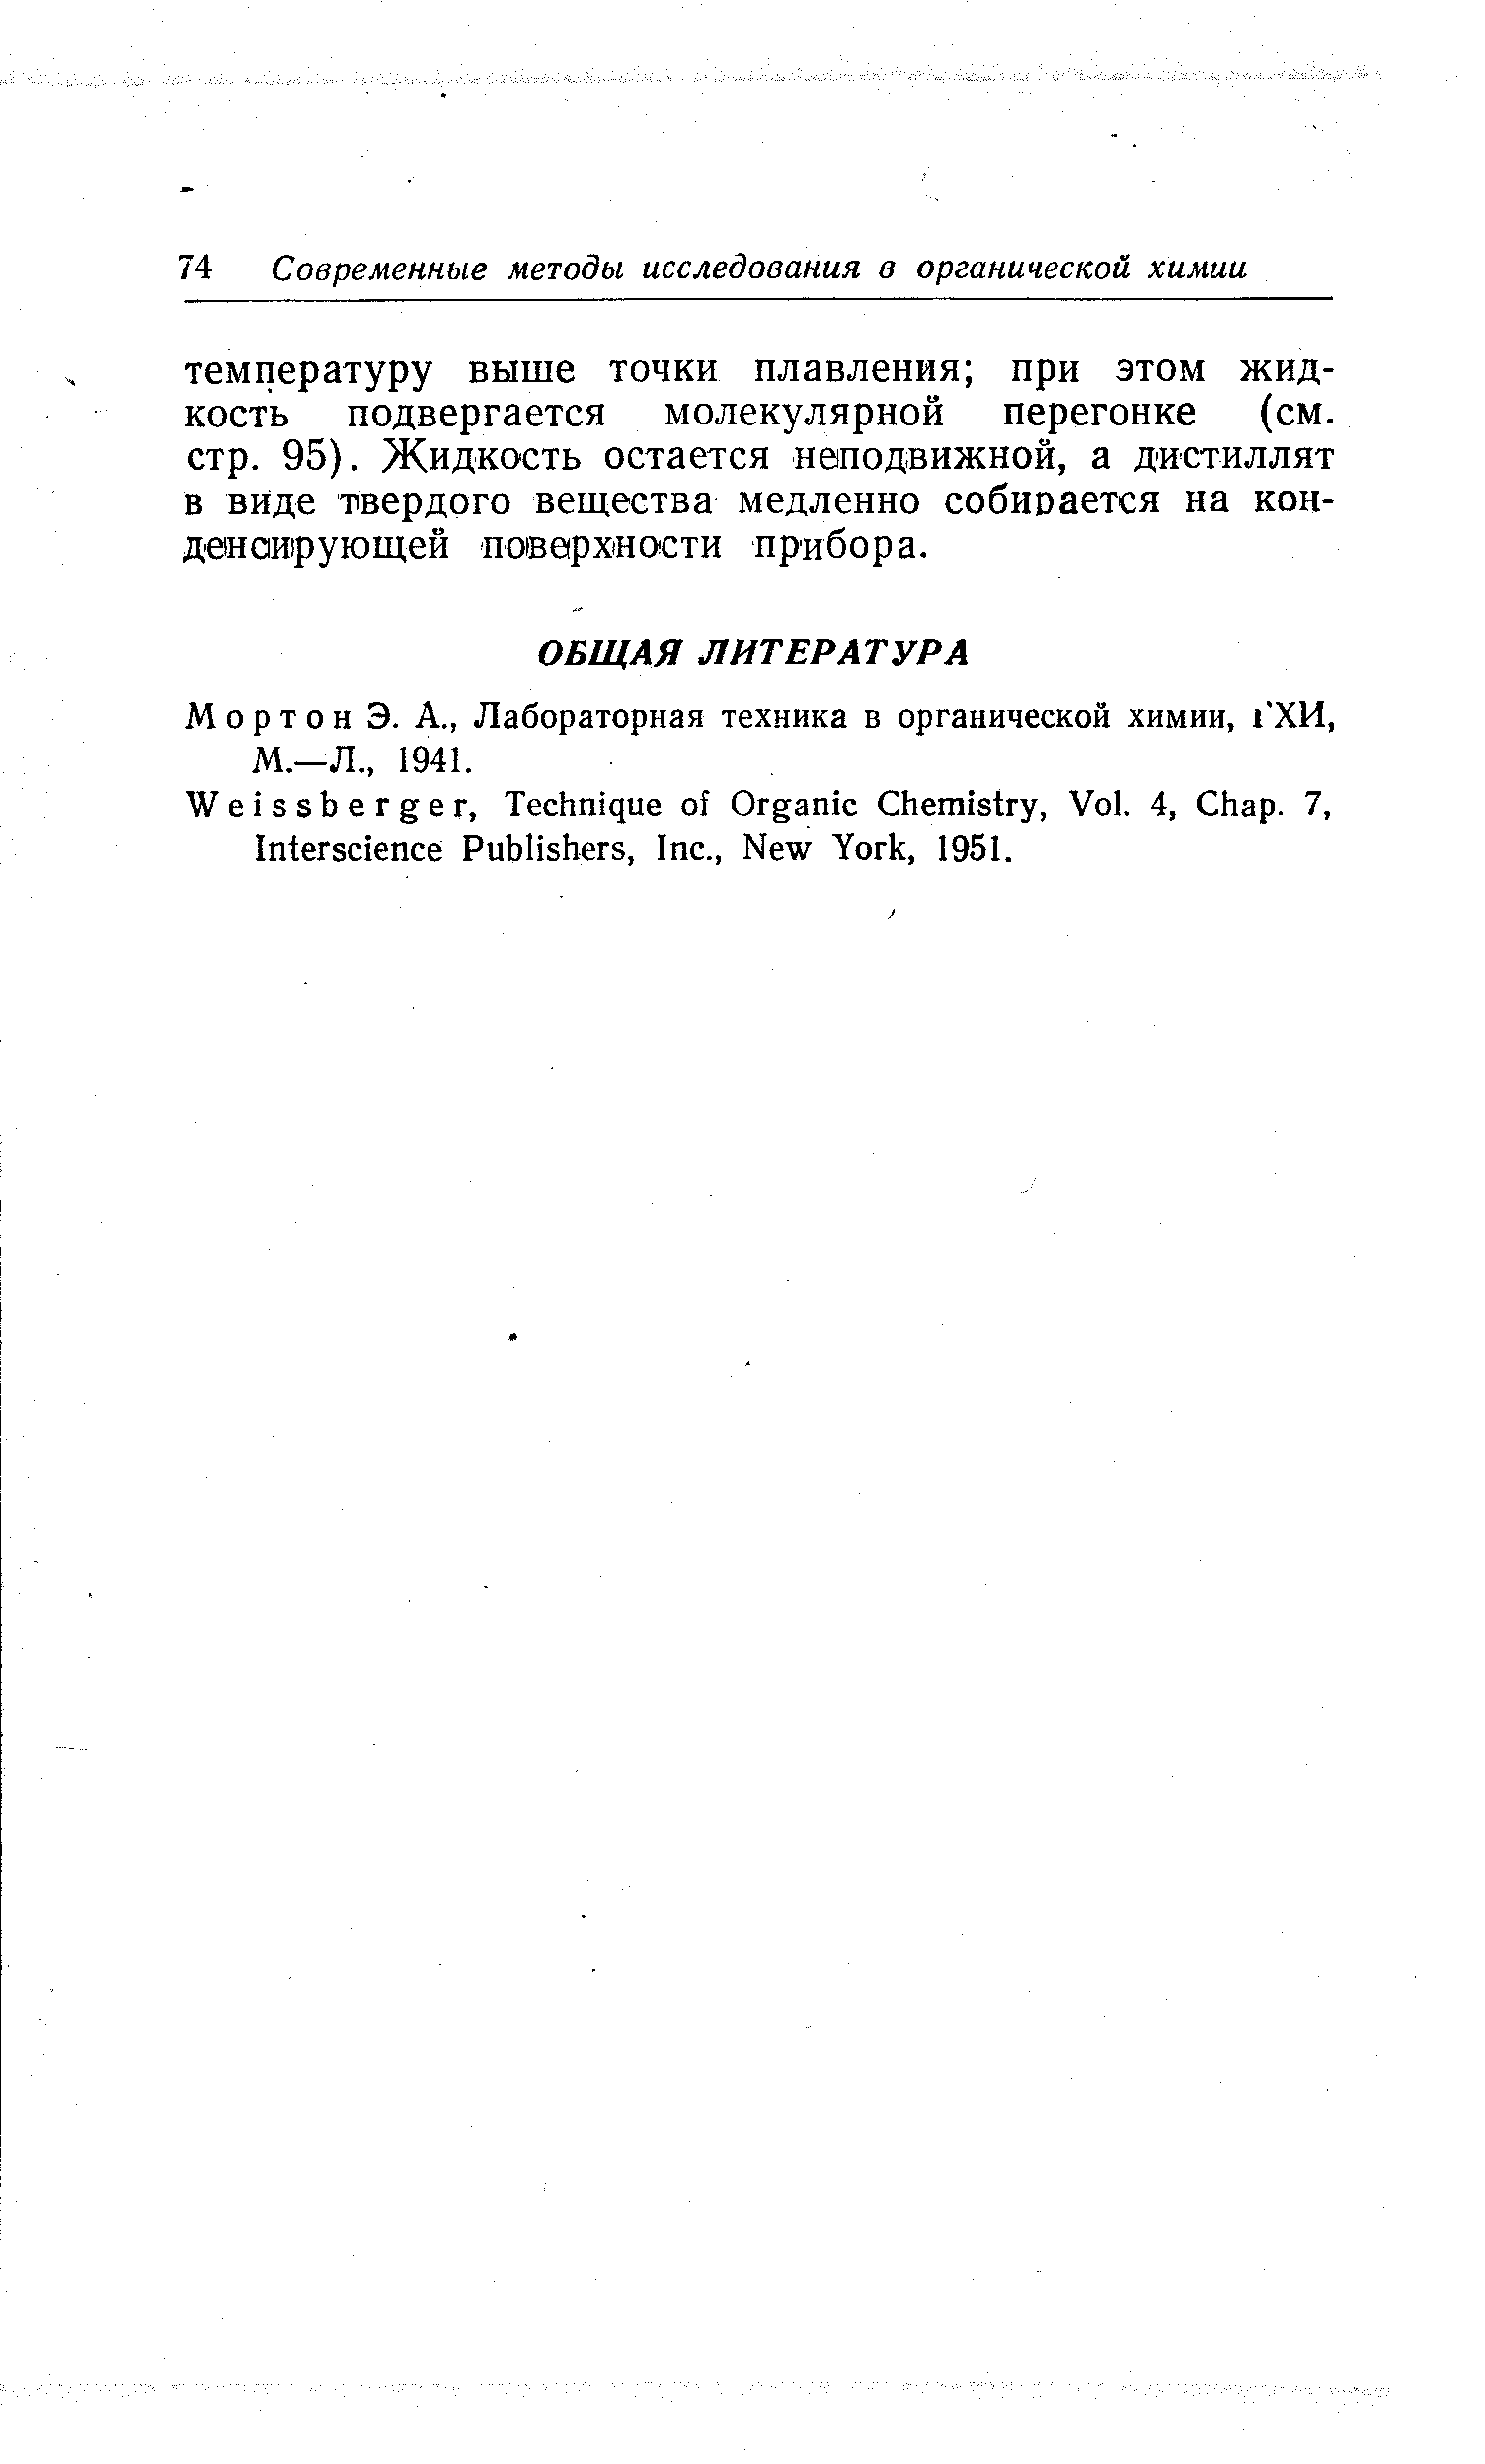 Мортон Э. А., Лабораторная техника в органической химии, 1 ХИ, М.—Л., 1941.